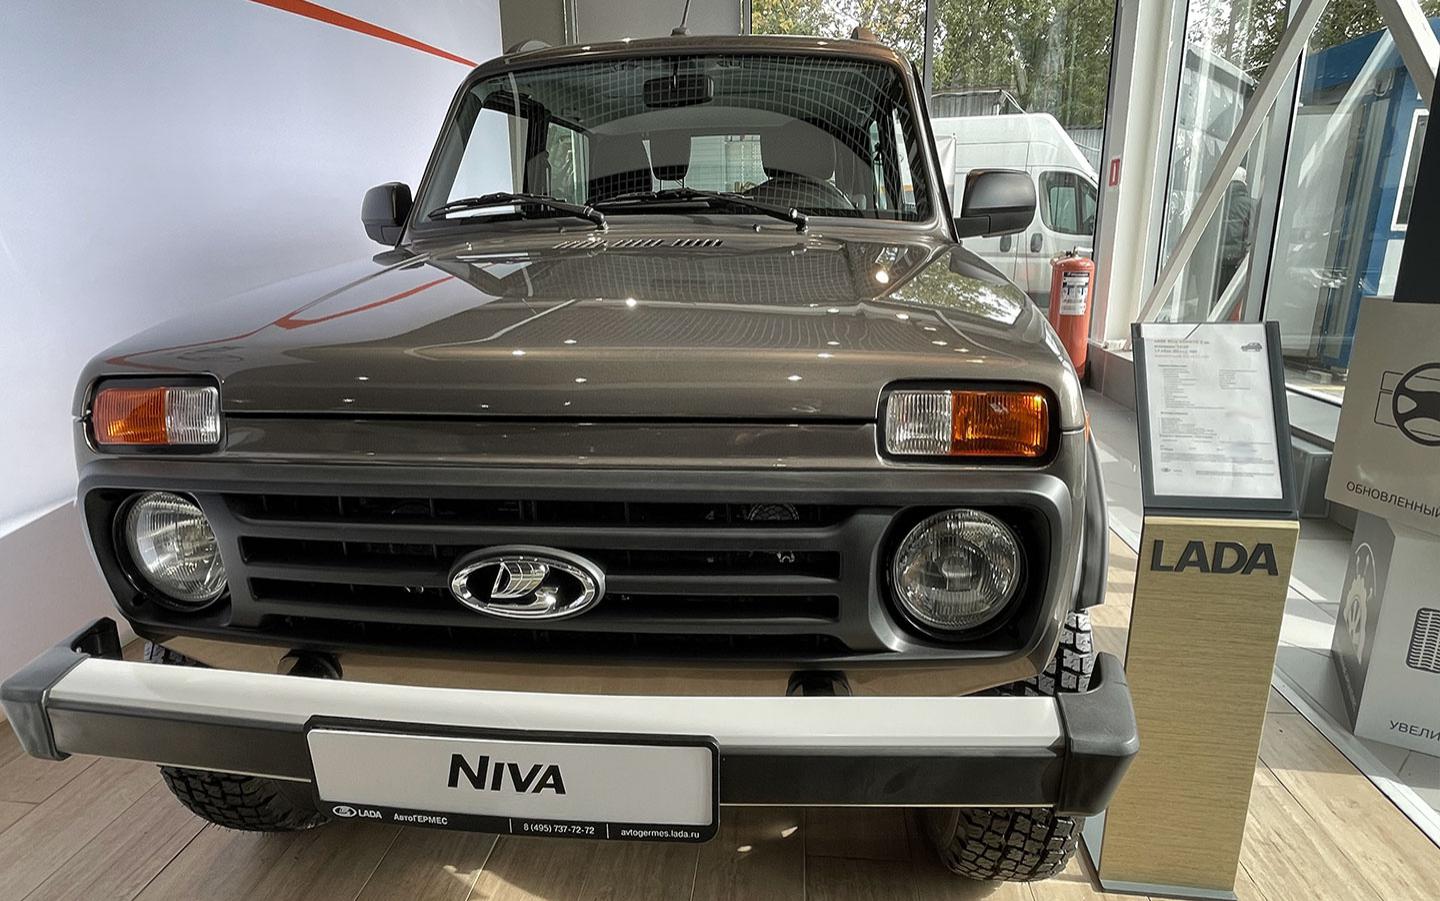 Покупка антикризисной Lada Niva стала не самой легкой задачей в Москве